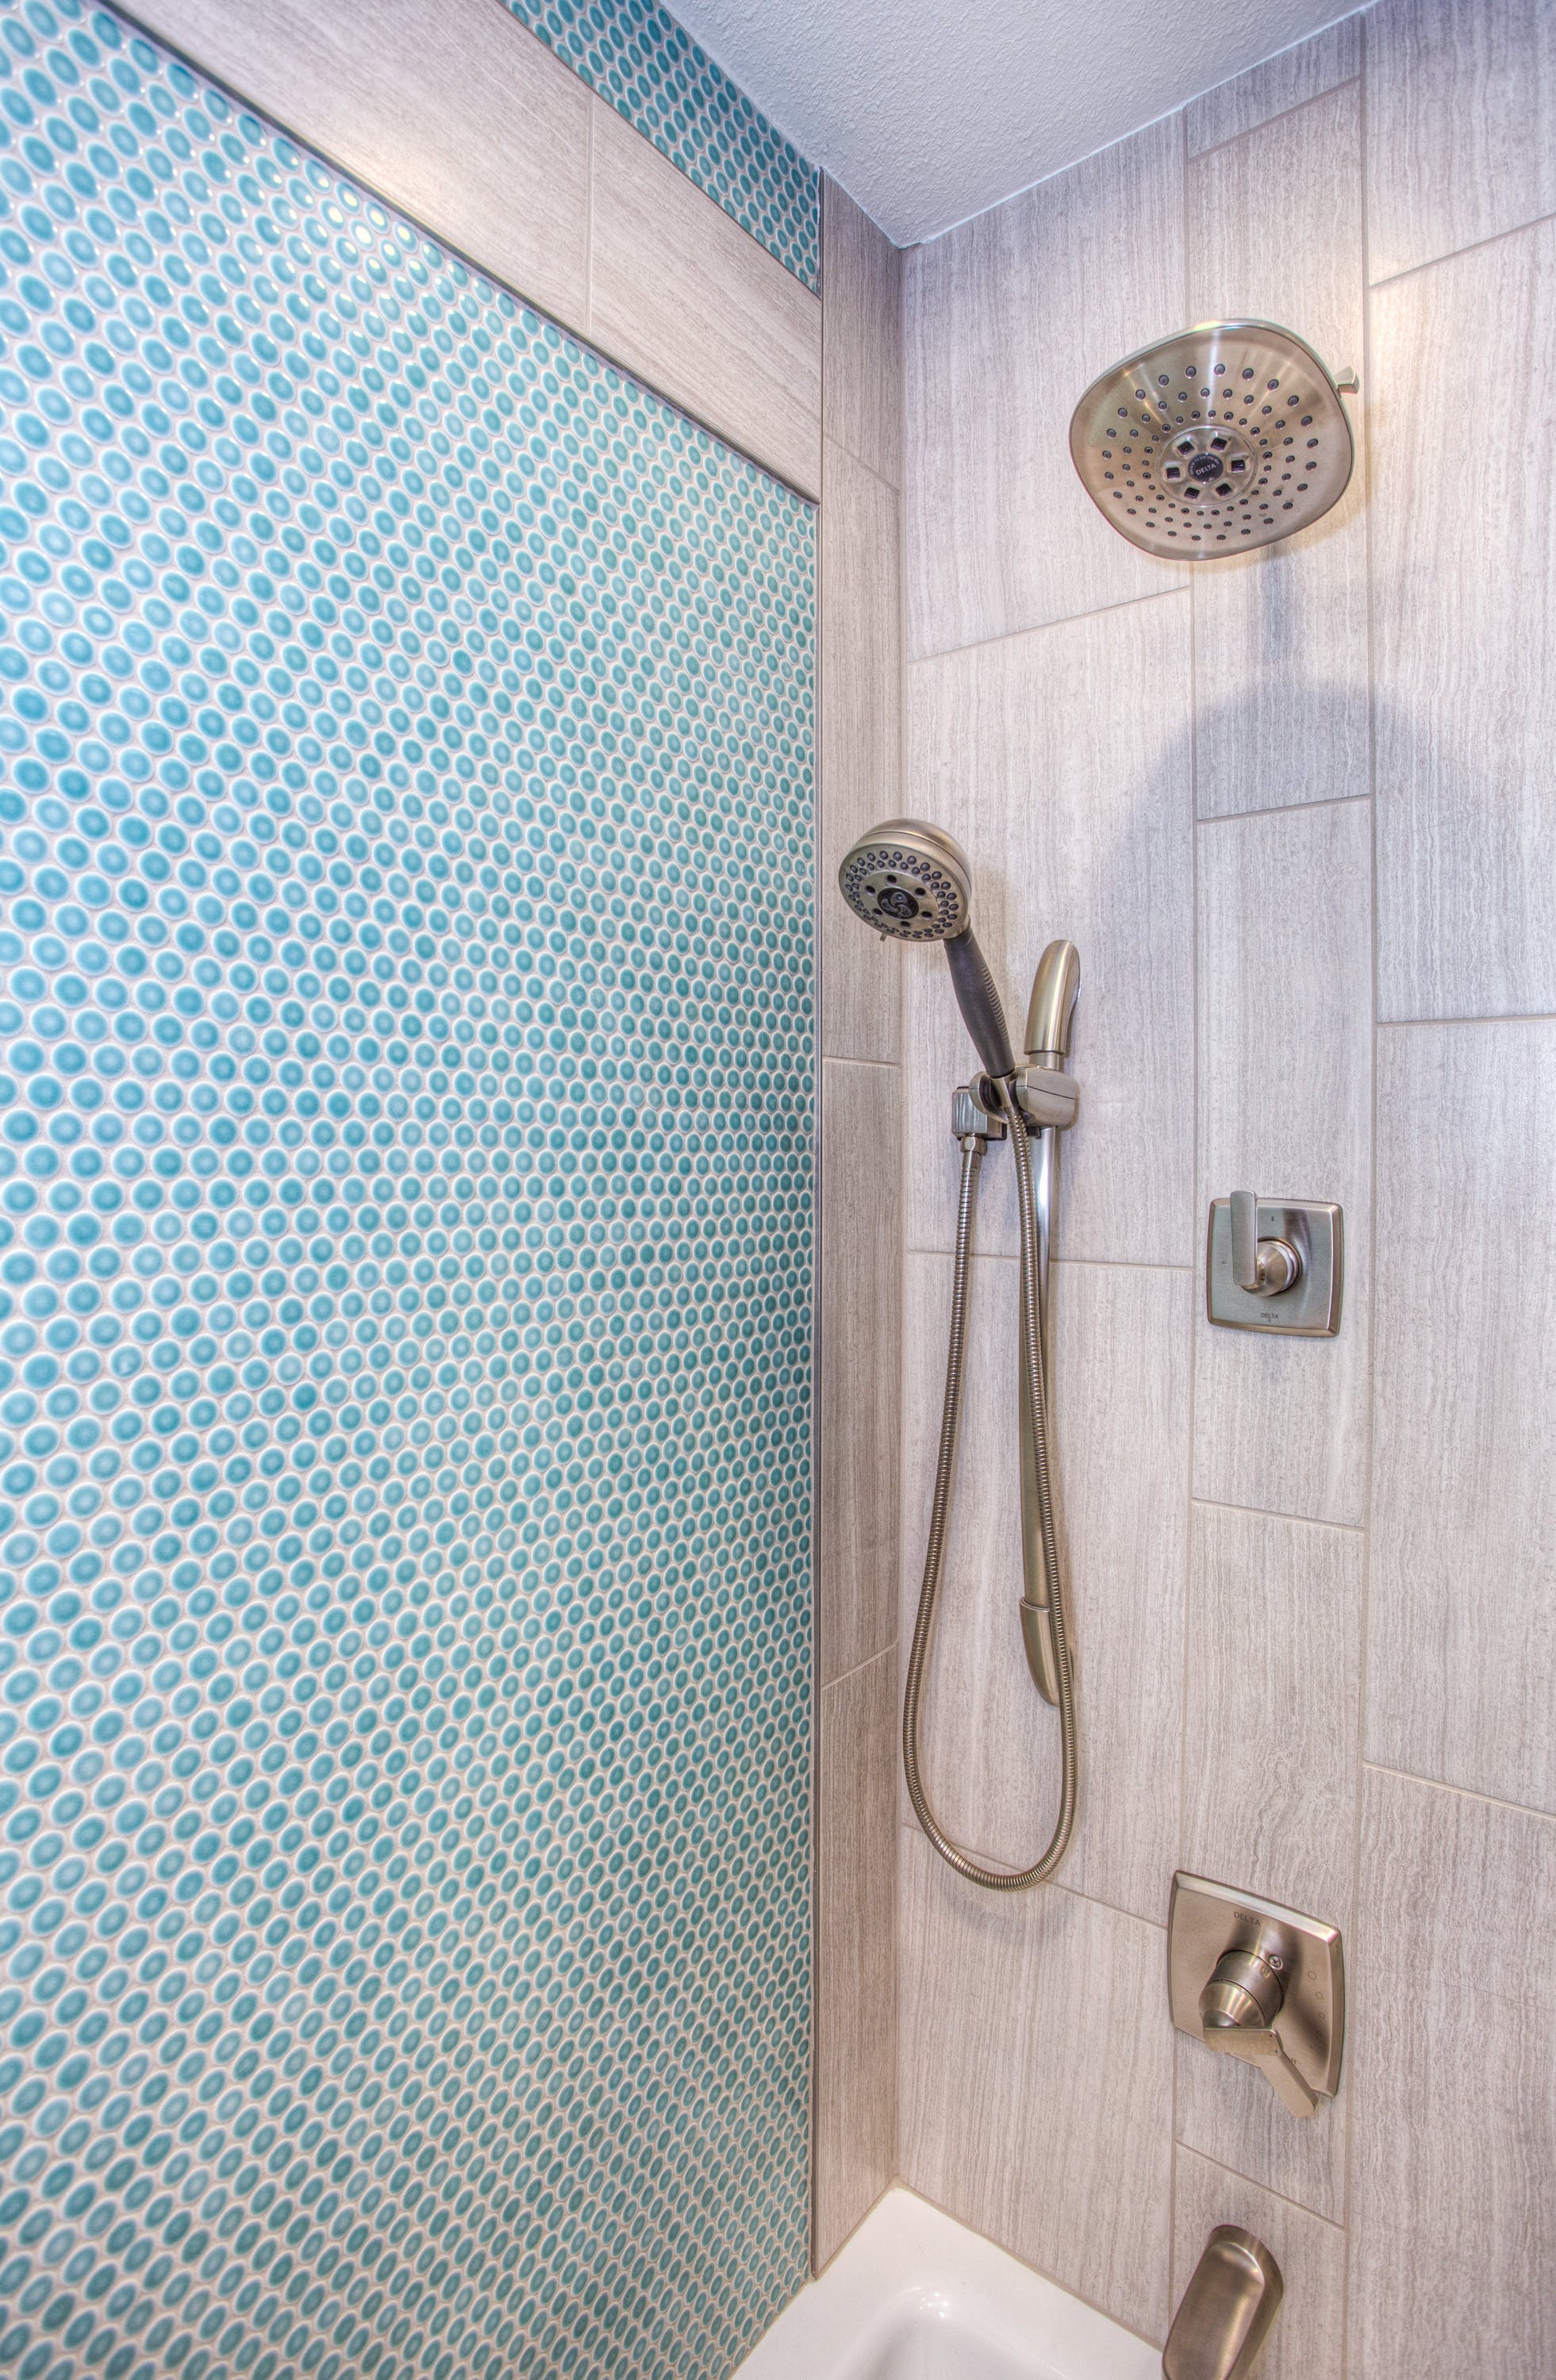 Une douche dans une salle de bain | Source : Pexels